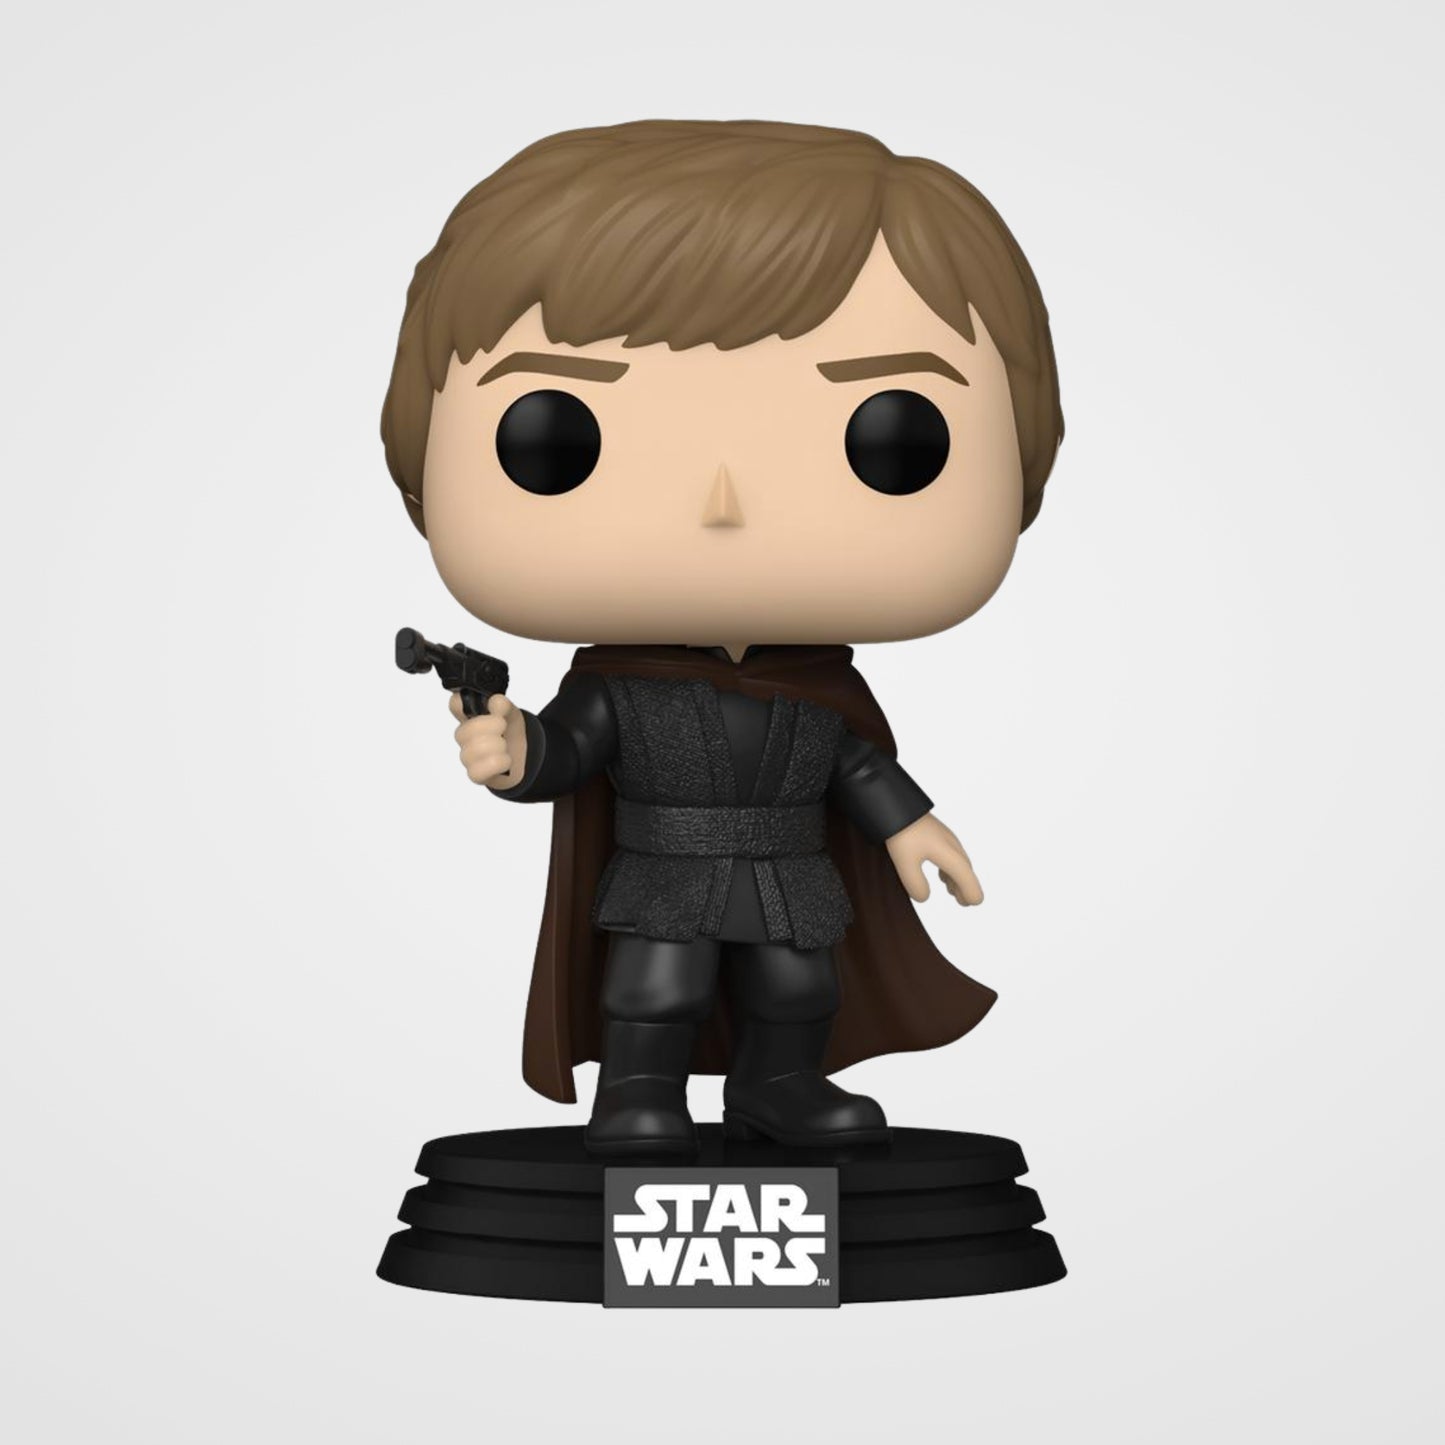 Luke Skywalker Return of the Jedi Funko Pop!